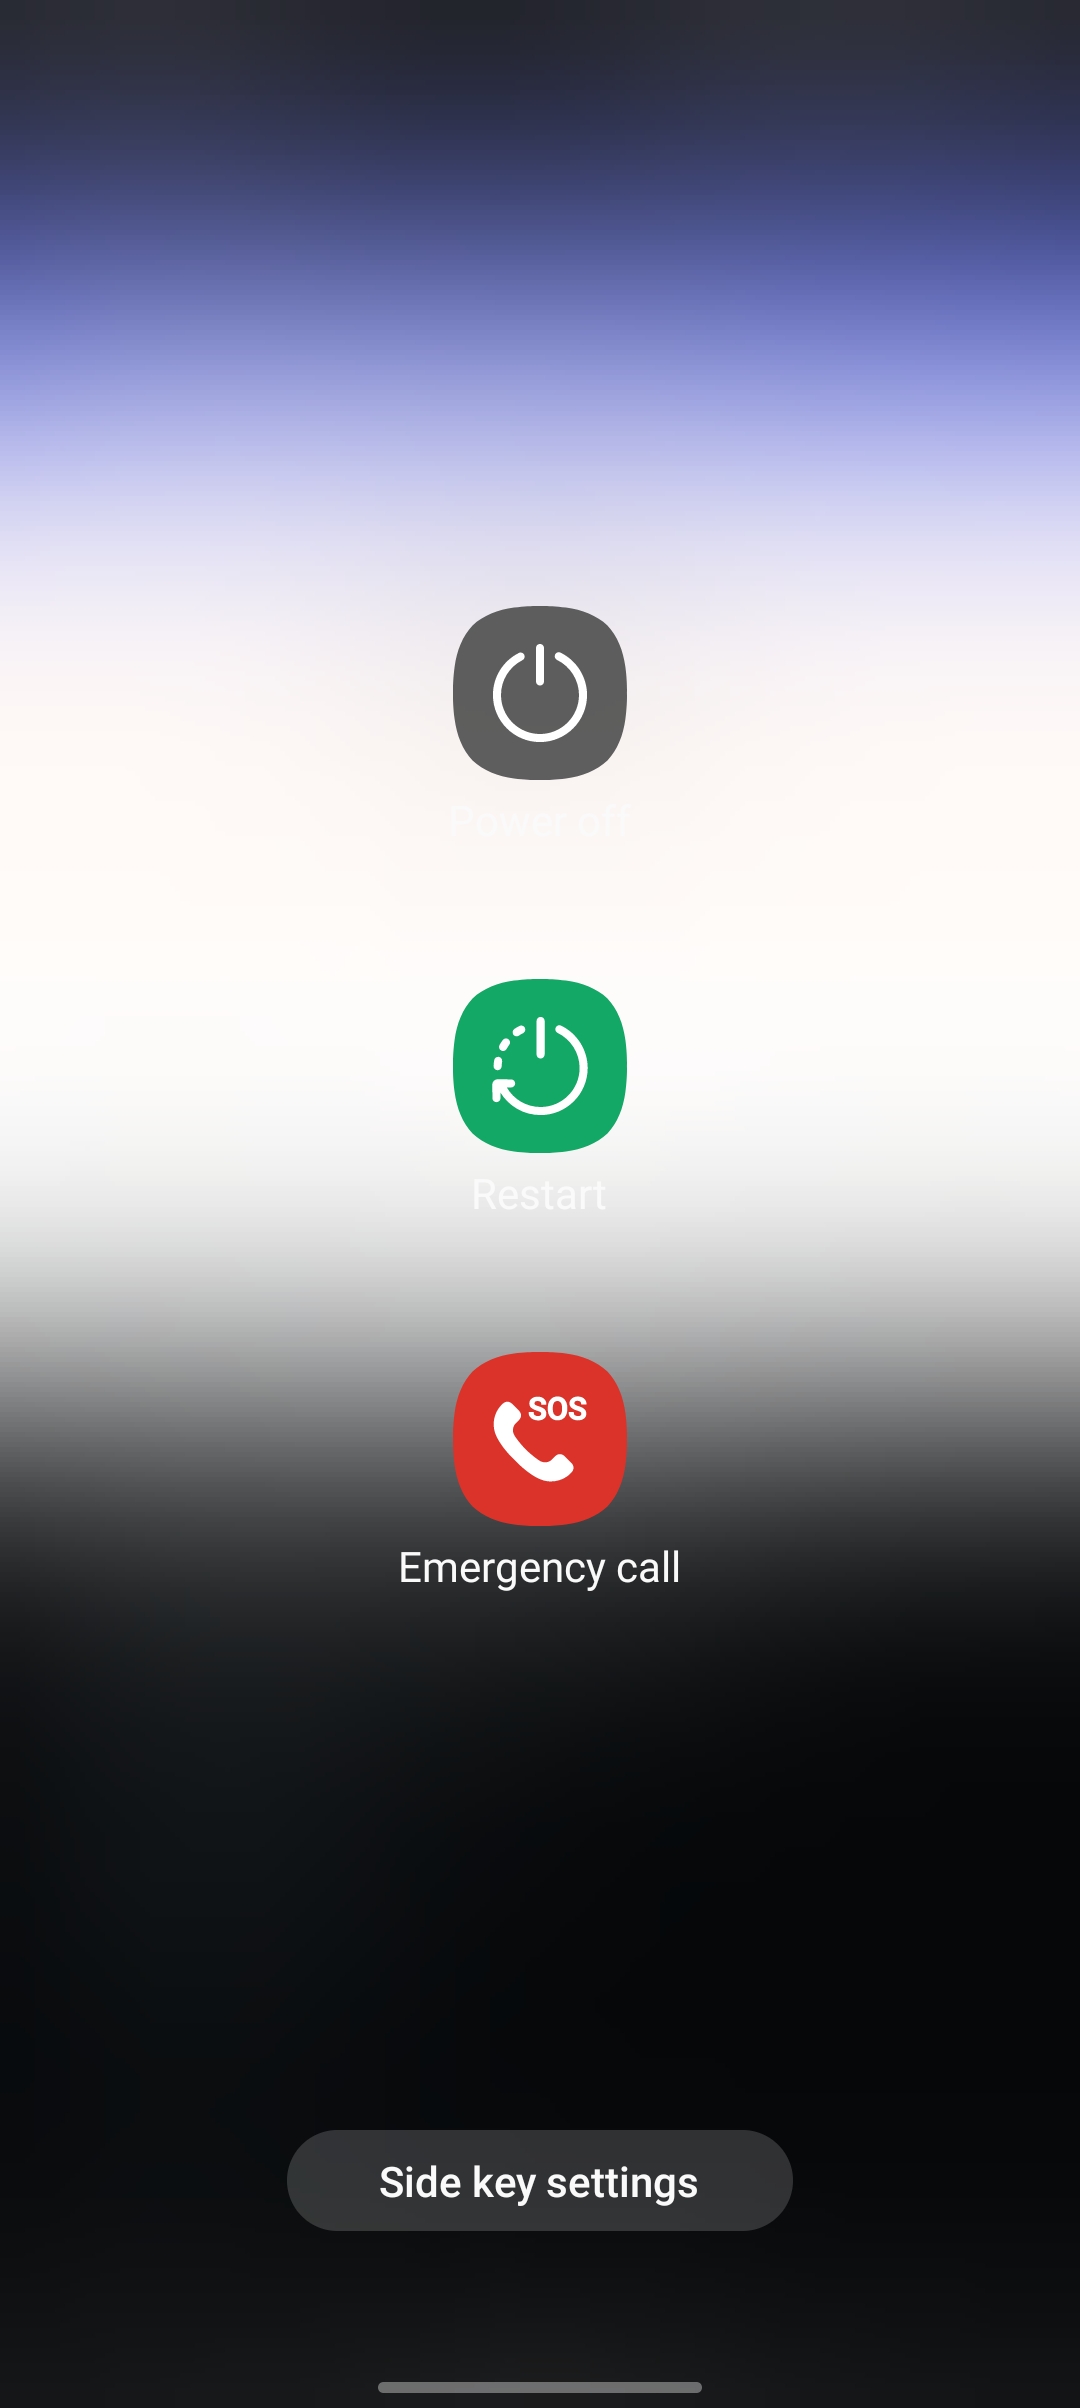 restart power off and emergency calls button from samsung screenshot